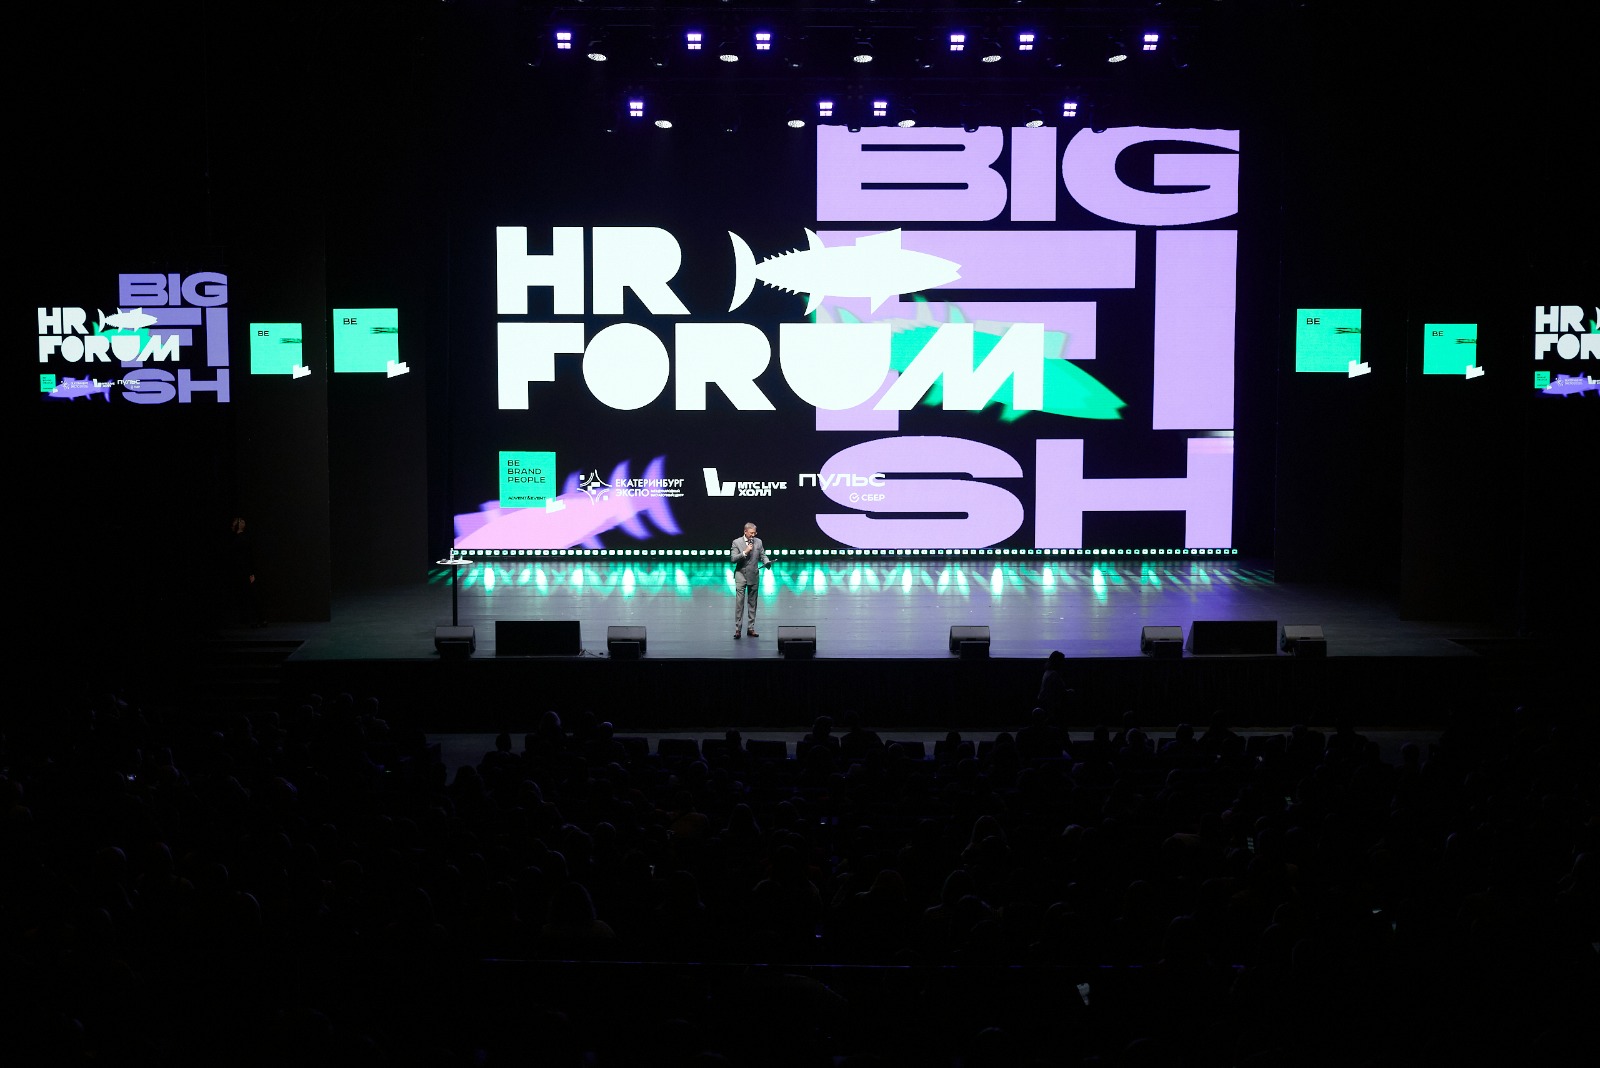 фото: В Екатеринбурге прошел крупнейший в России форум для HR-ов и управленцев HR Forum Big Fish